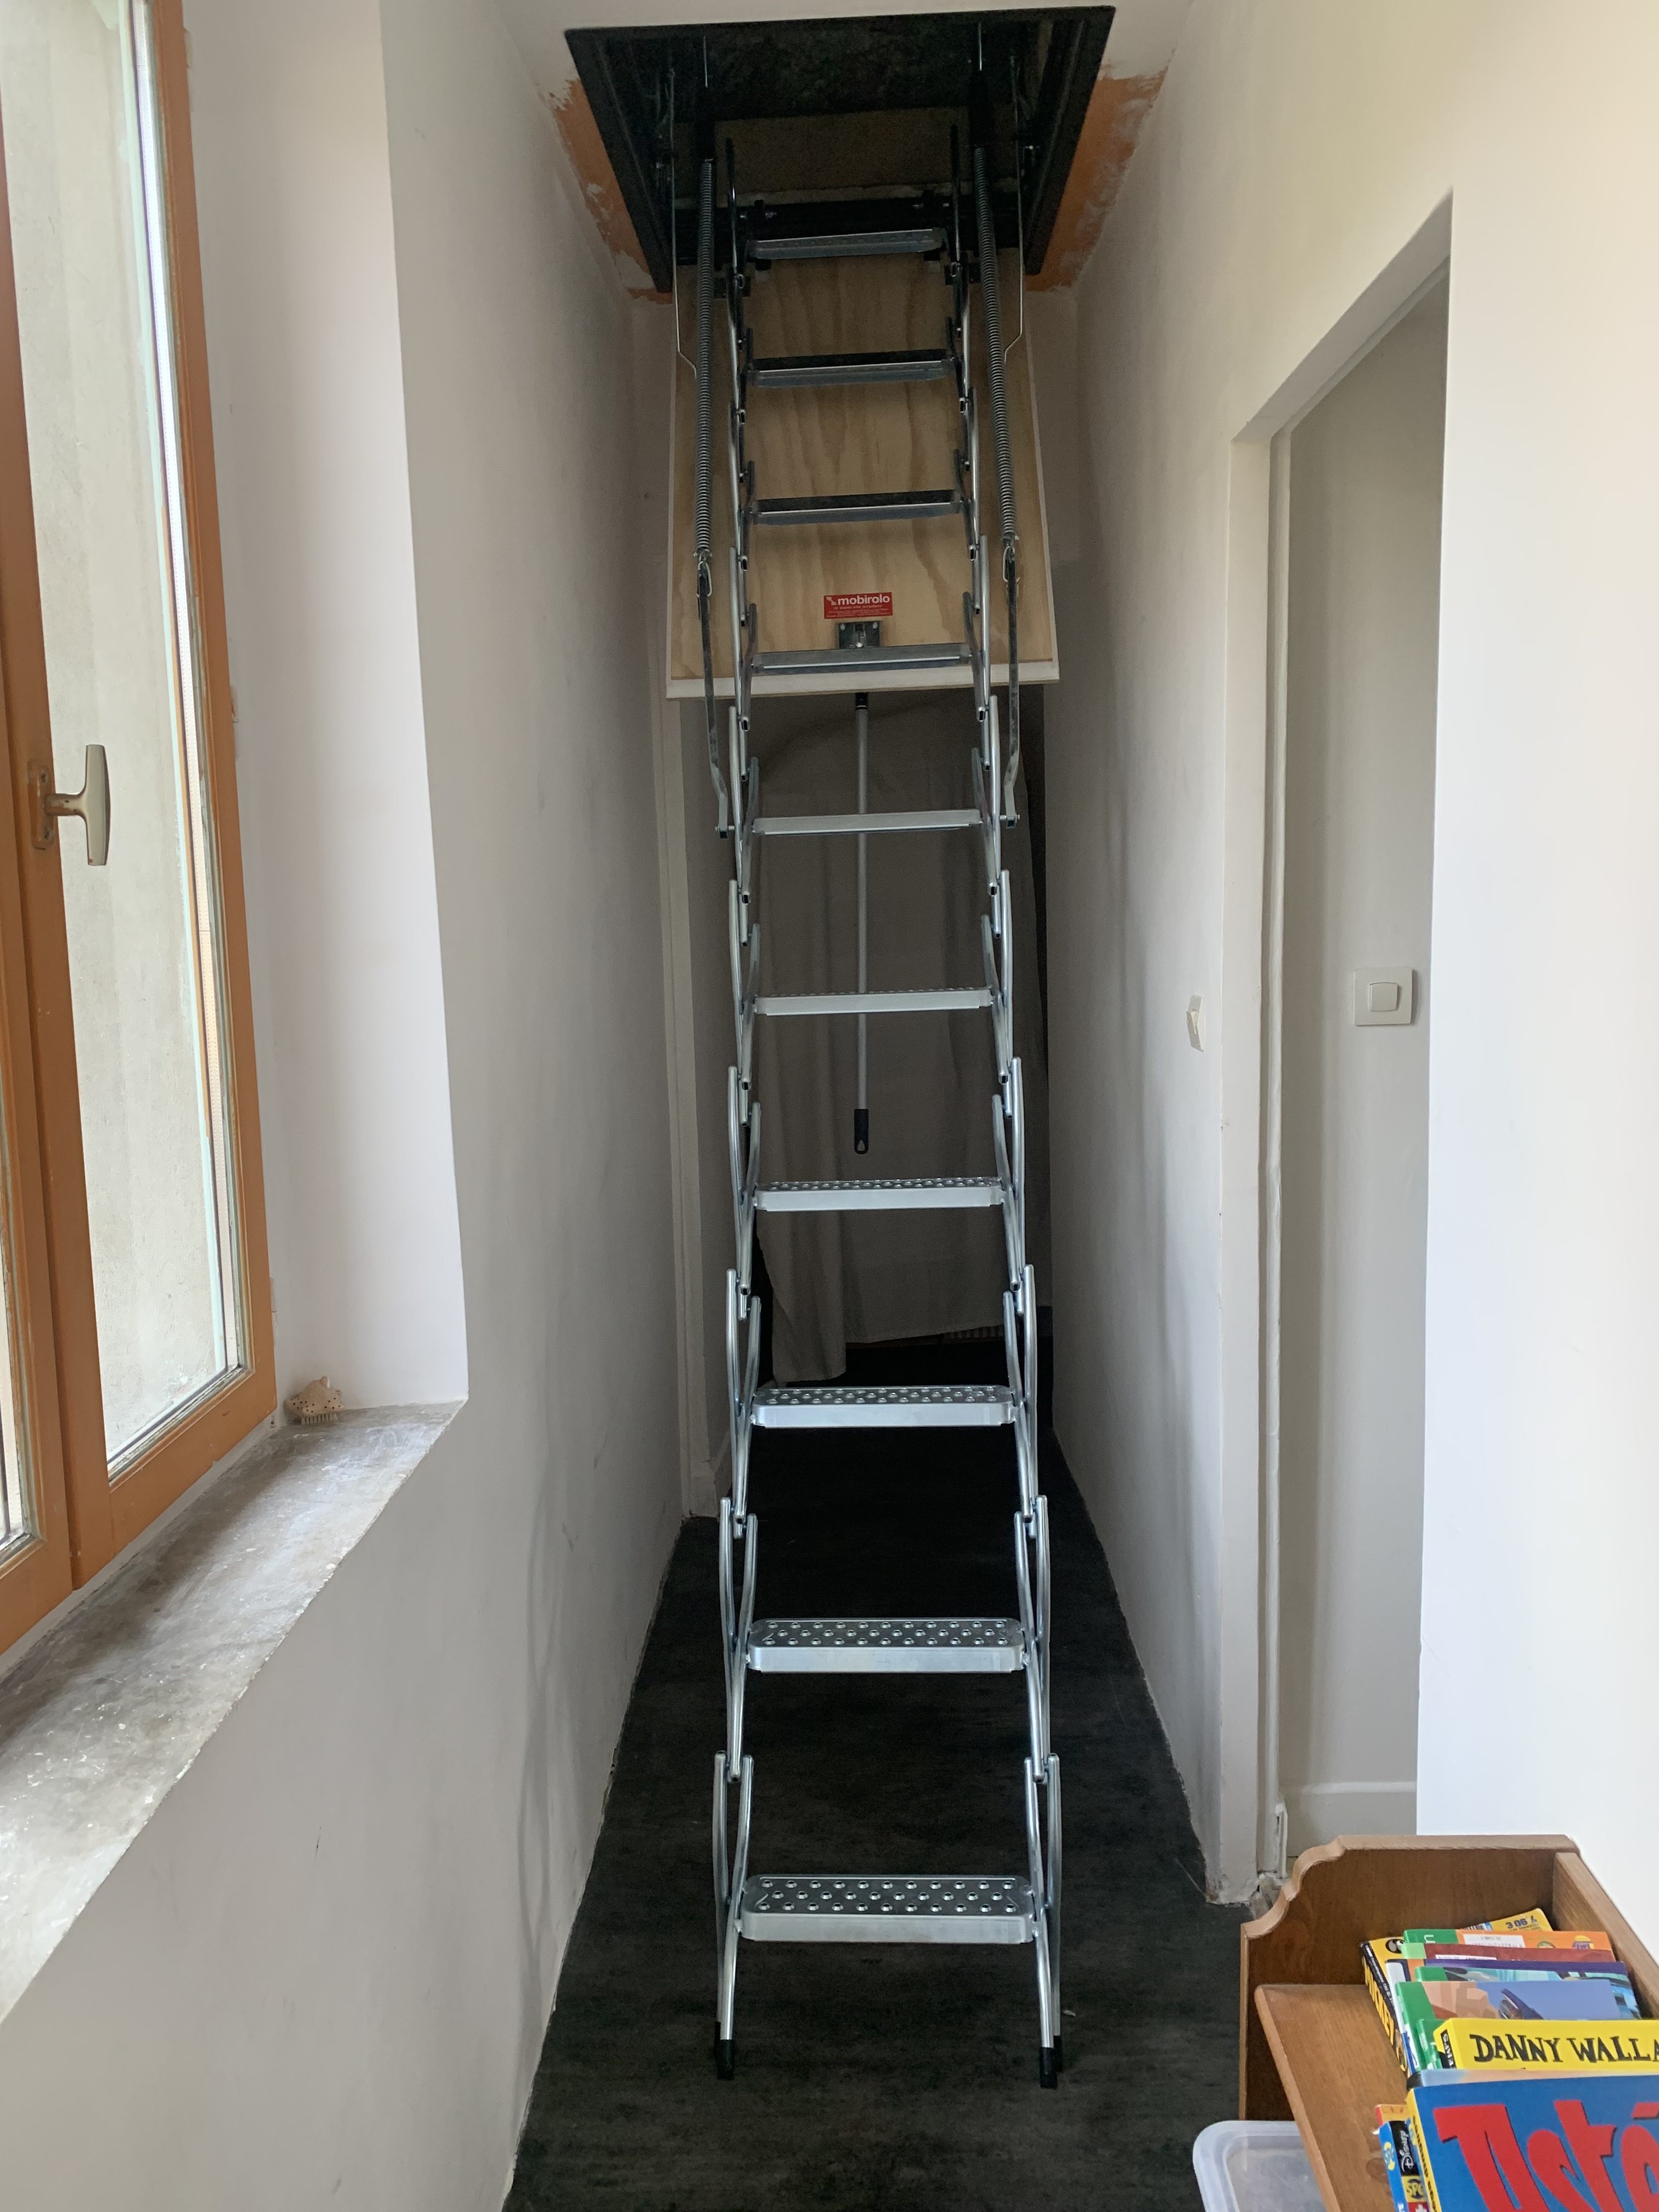 Escalier escamotable aluminiumpour un accès grenier facile